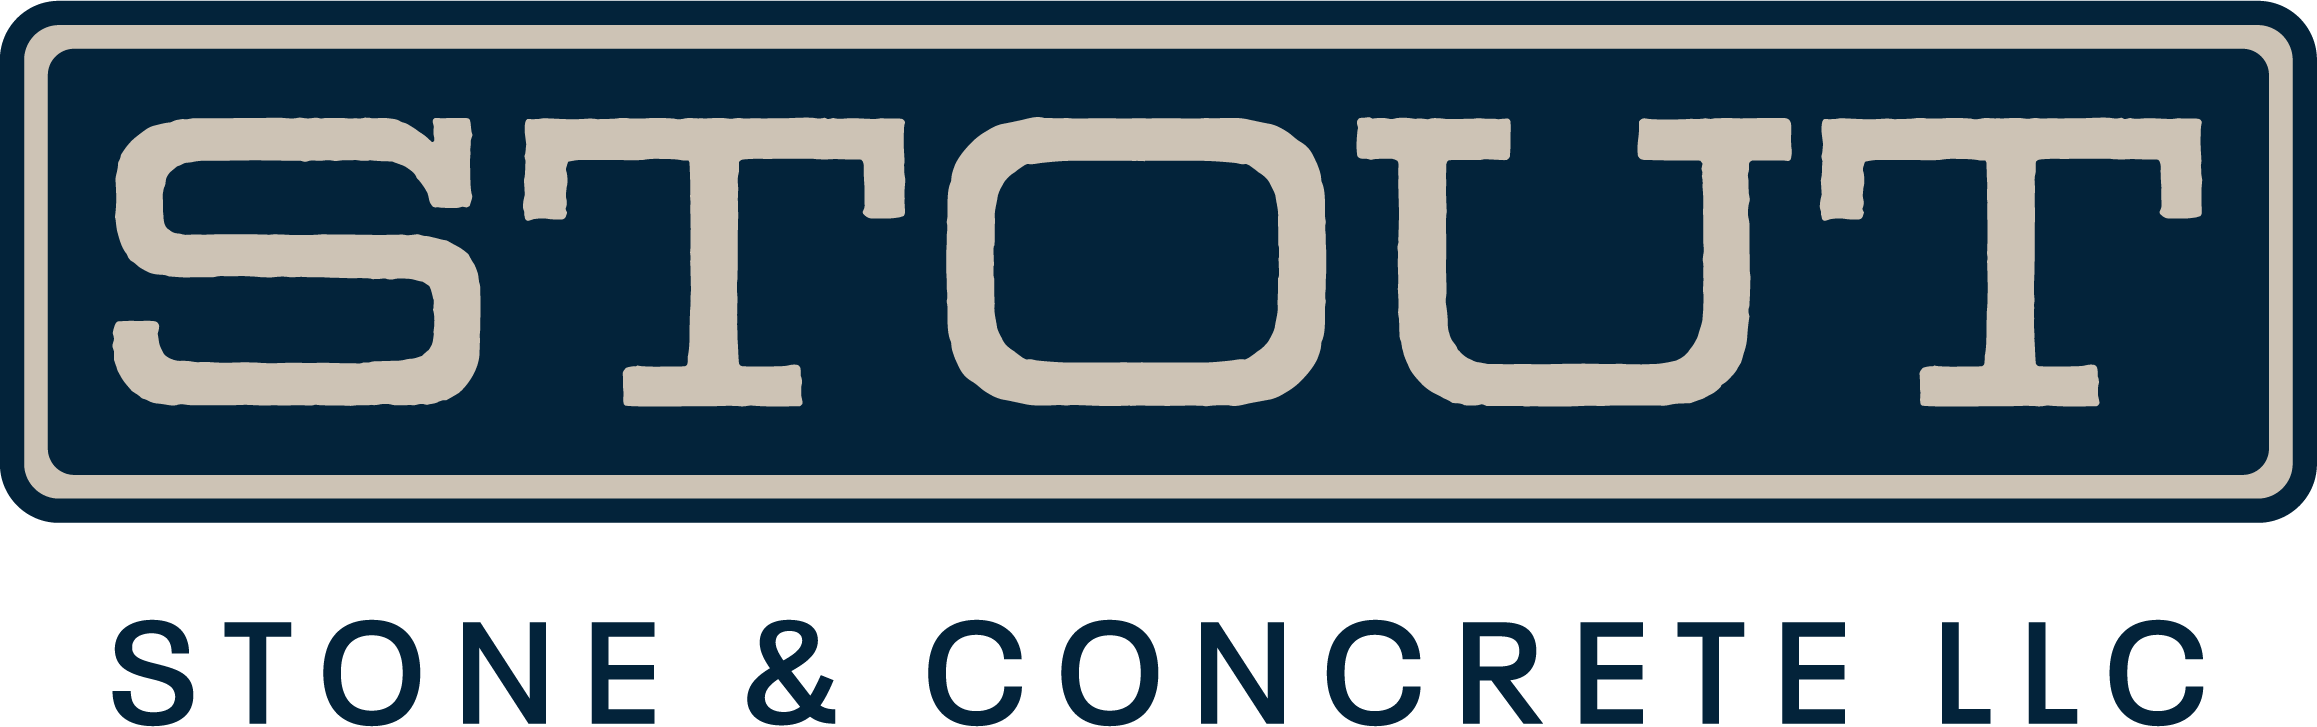 Stout Stone & Concrete, LLC Logo